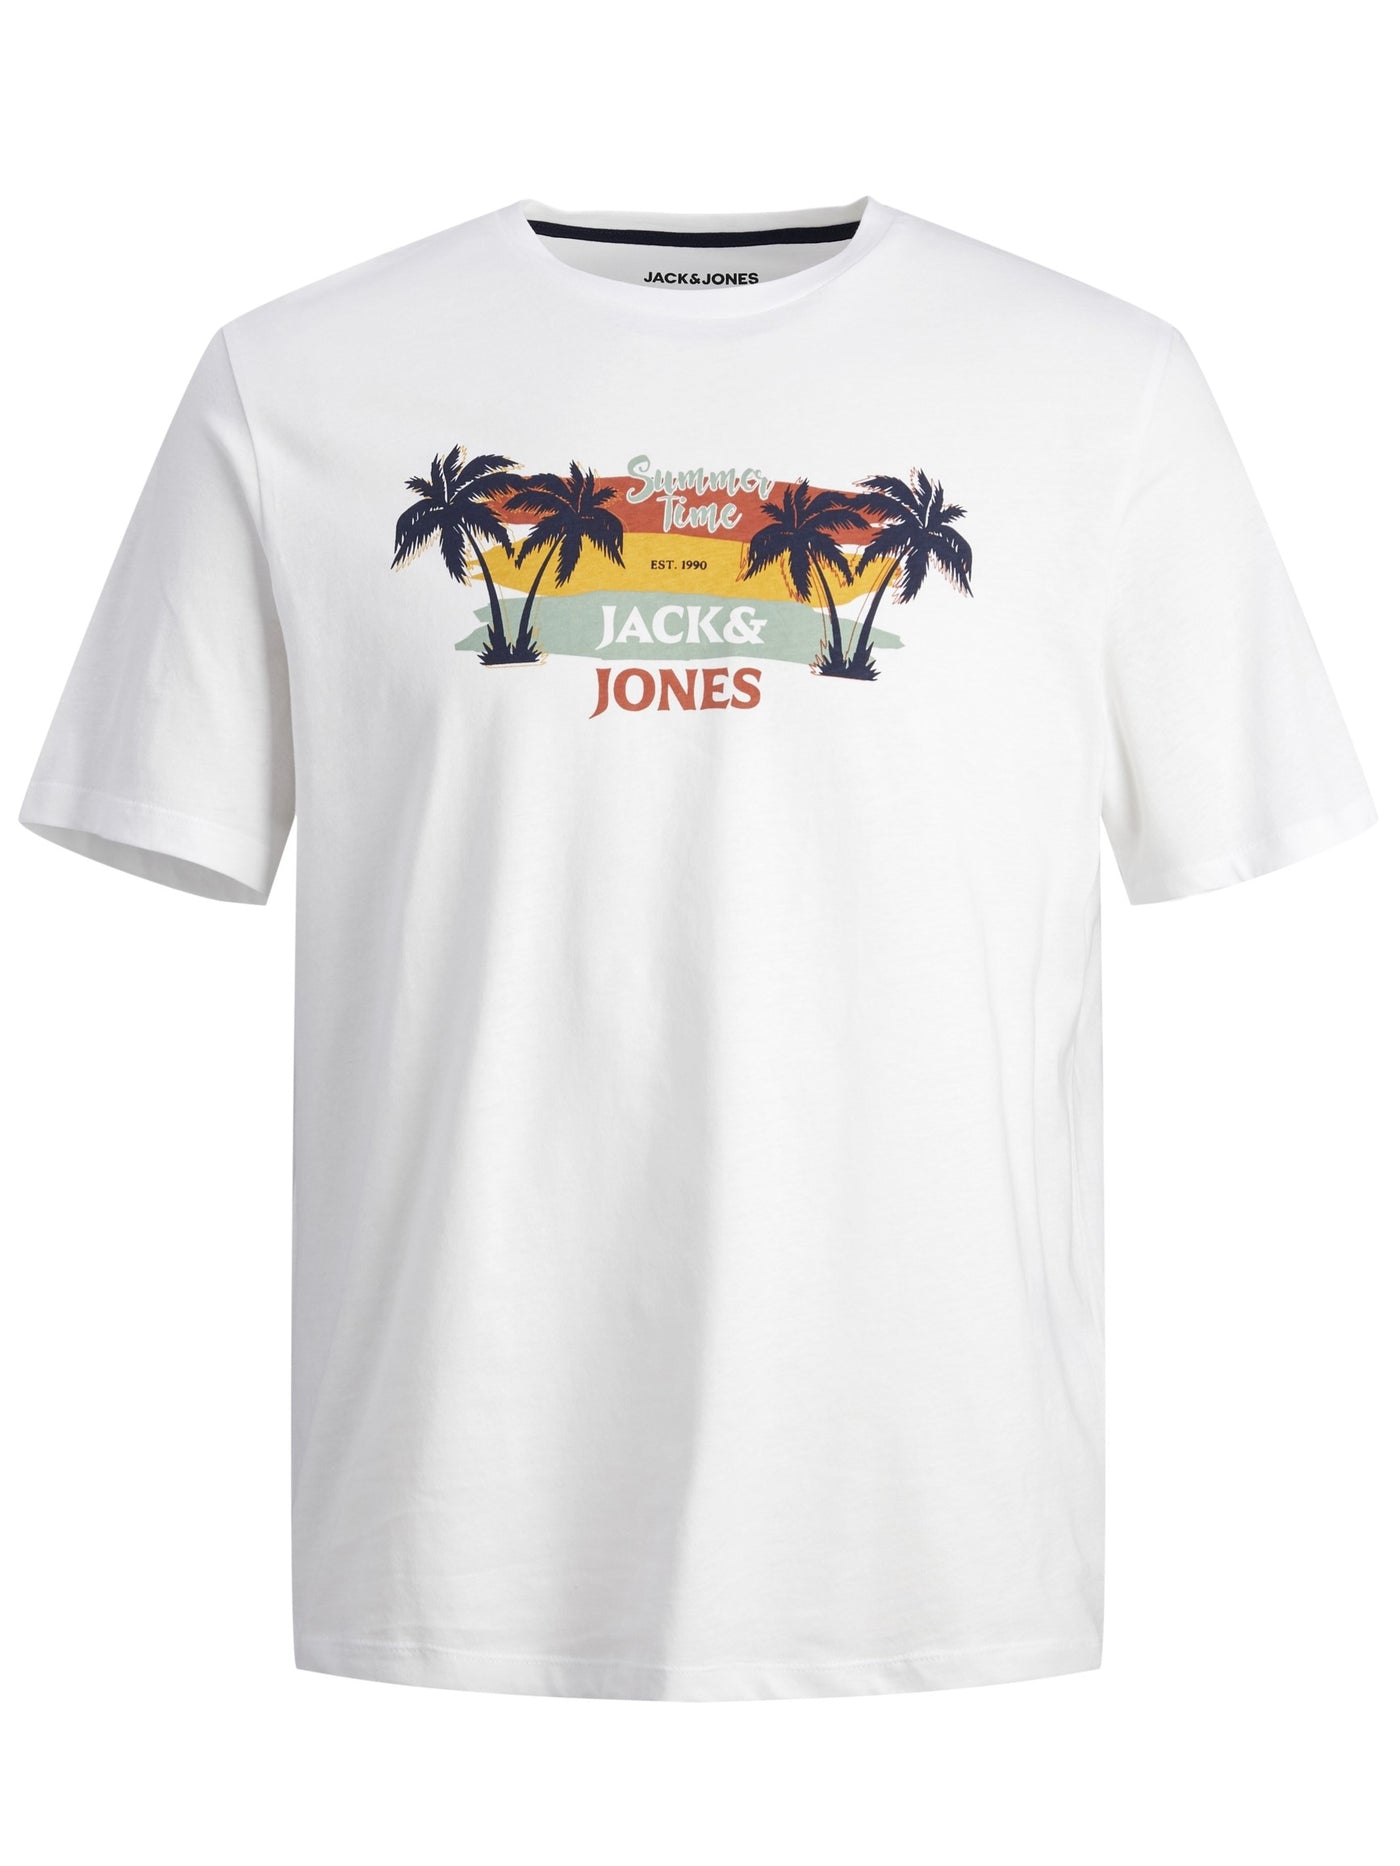 T-shirt blanc à imprimé de palmiers